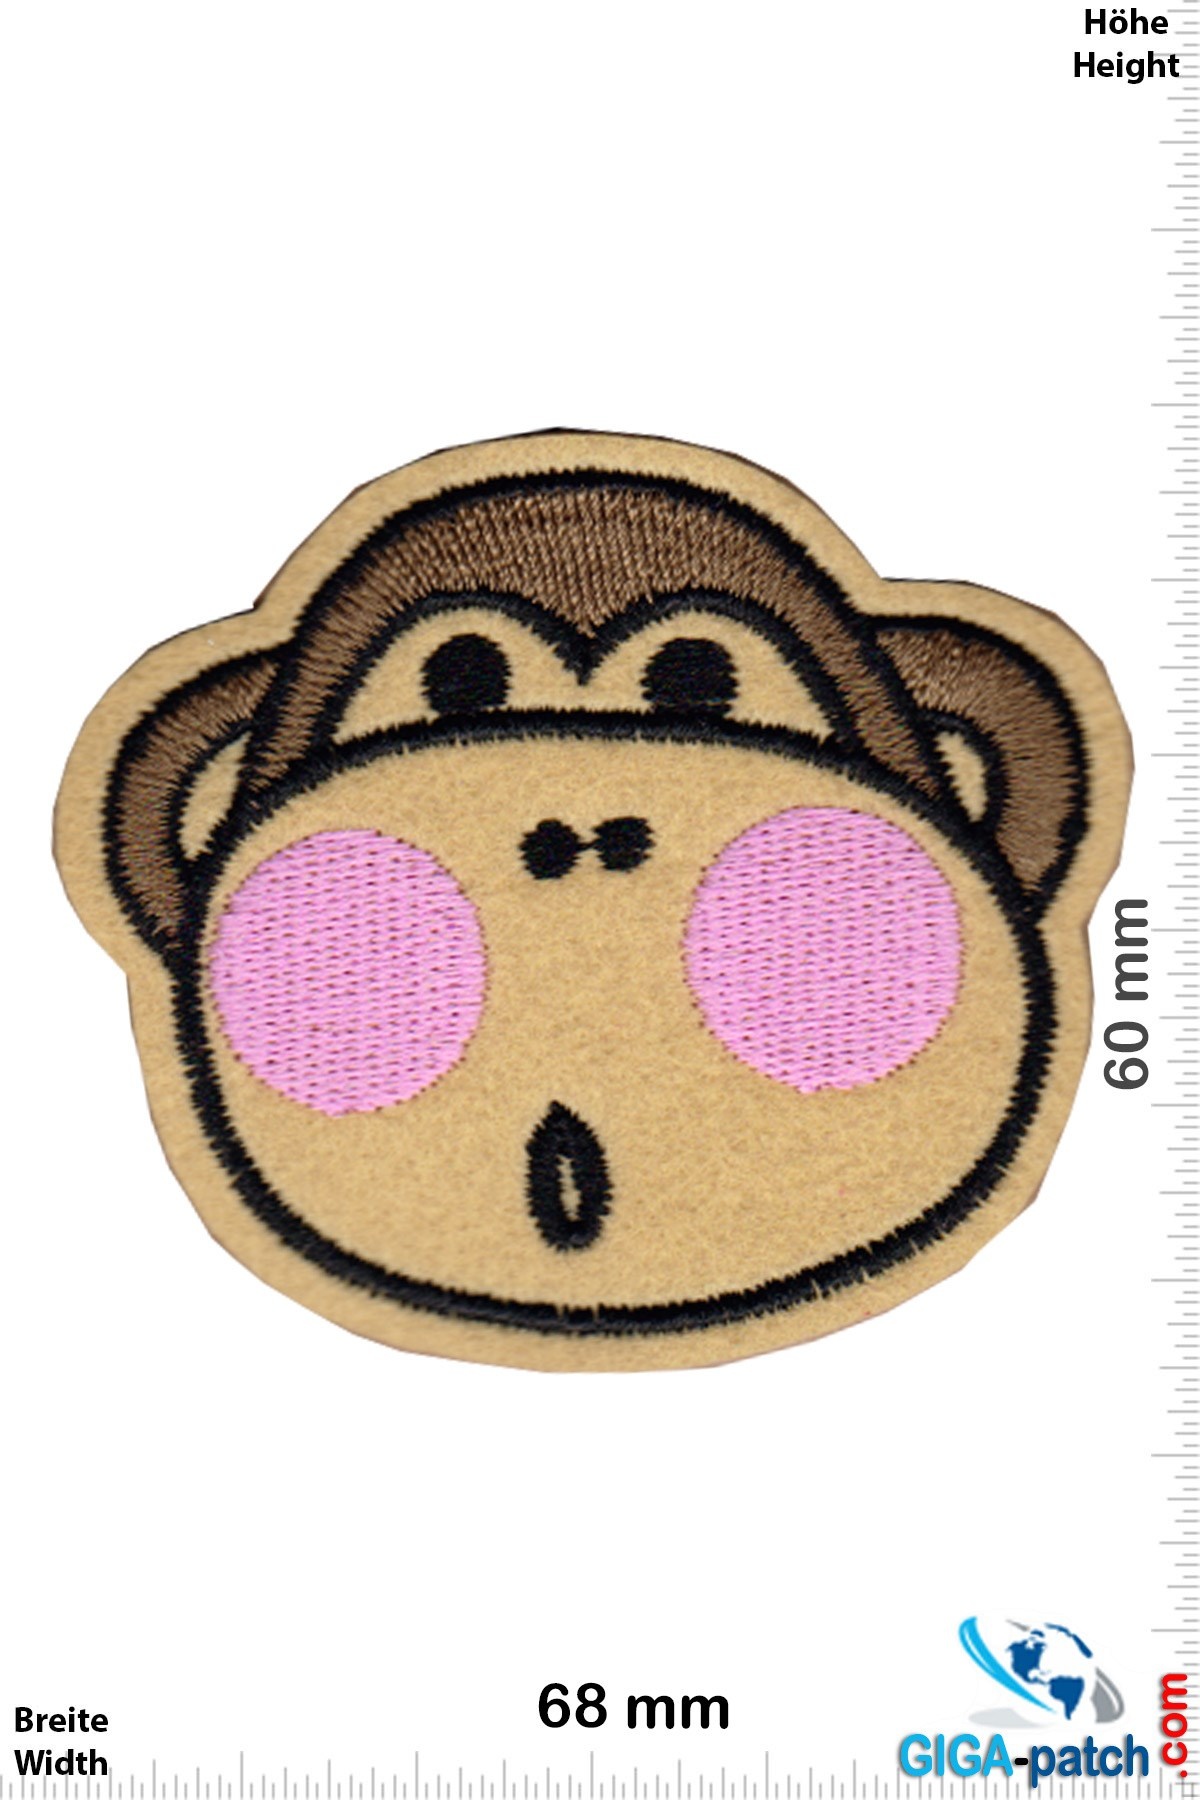 Monkey Affe - Ohh - Monkey